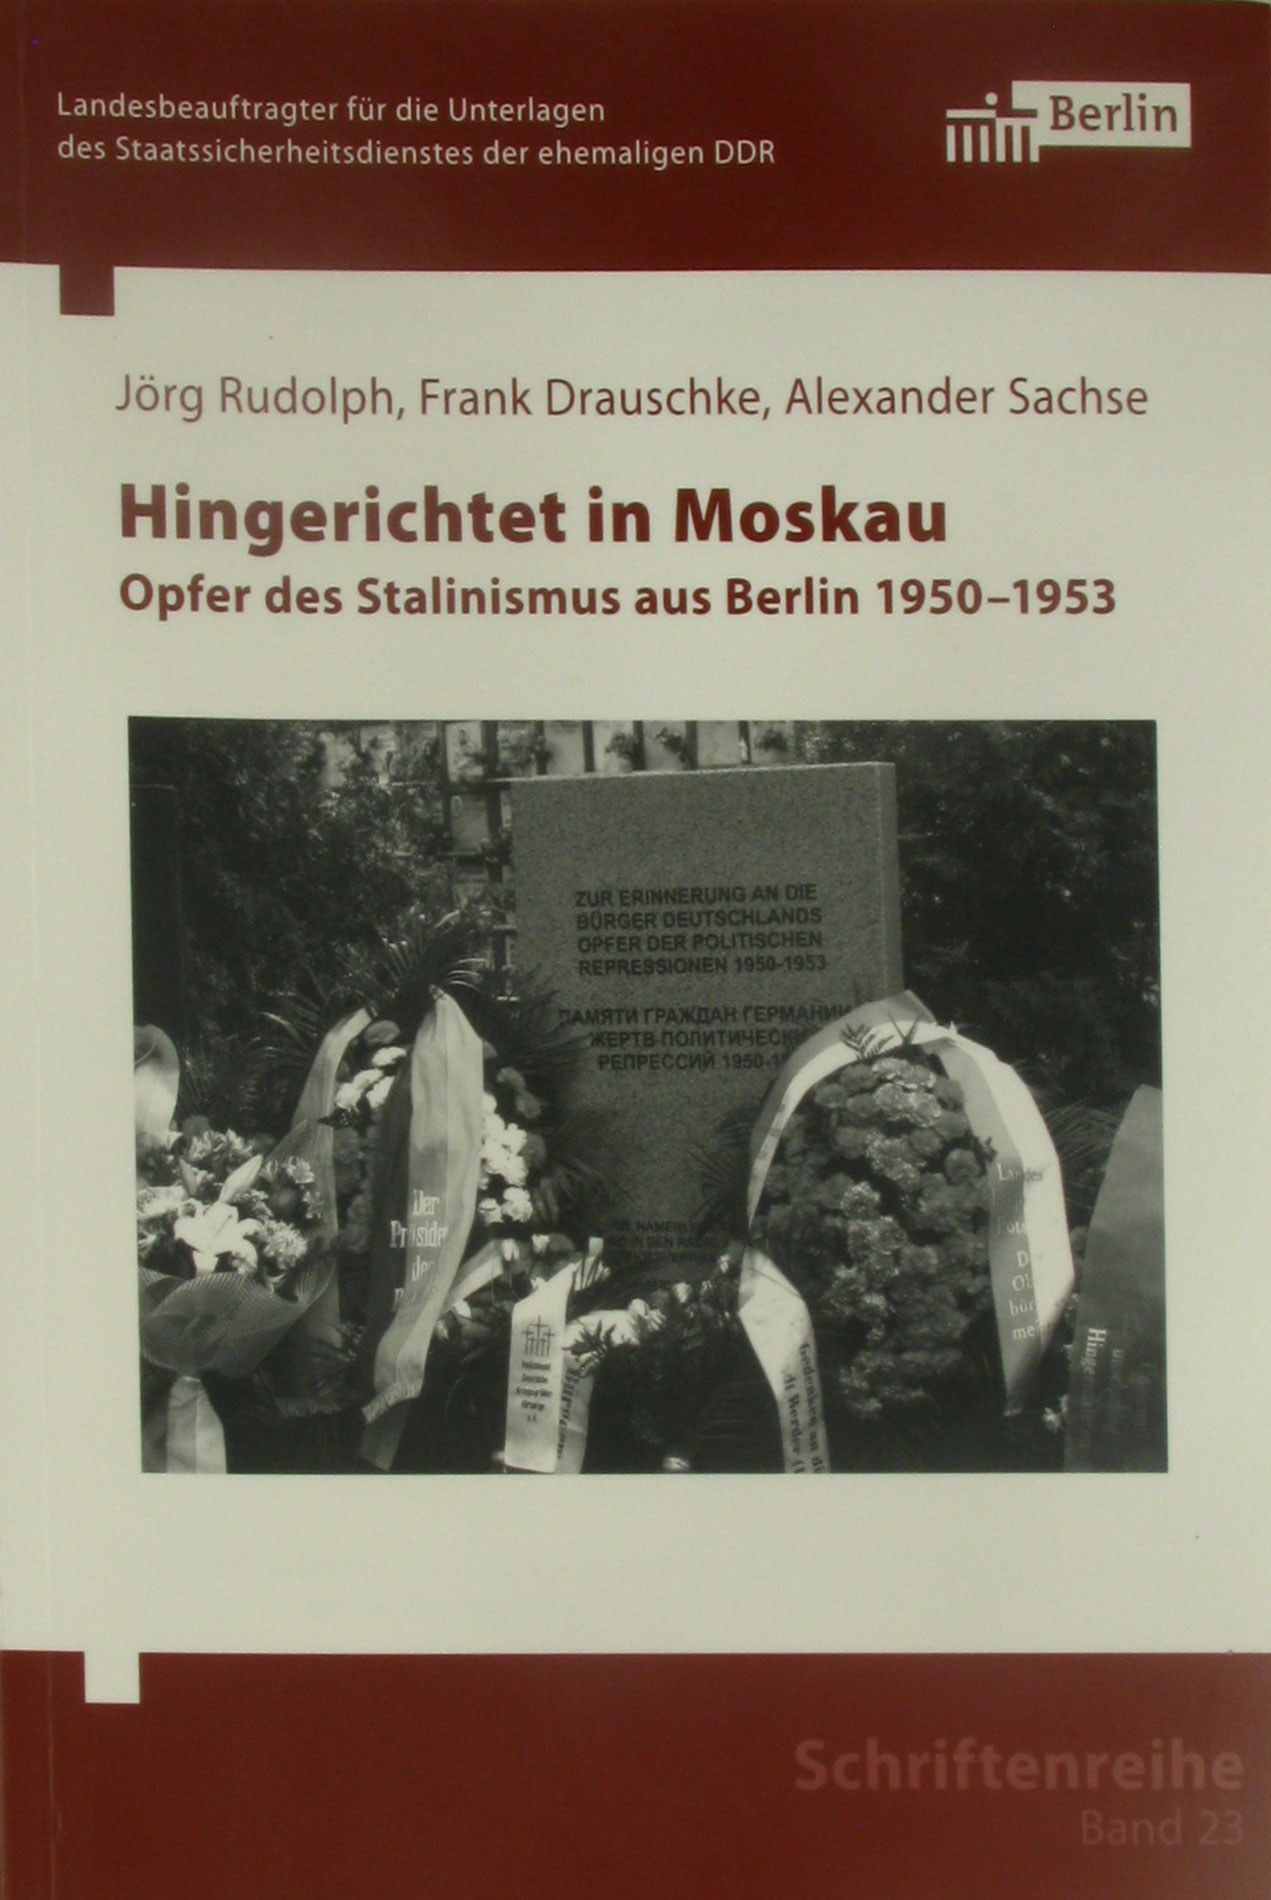 Hingerichtet in Moskau. Opfer des Stalinismus aus Berlin 1950-1953., - Rudolph, Jörg, Frank Drauschke und Alexander Sachse